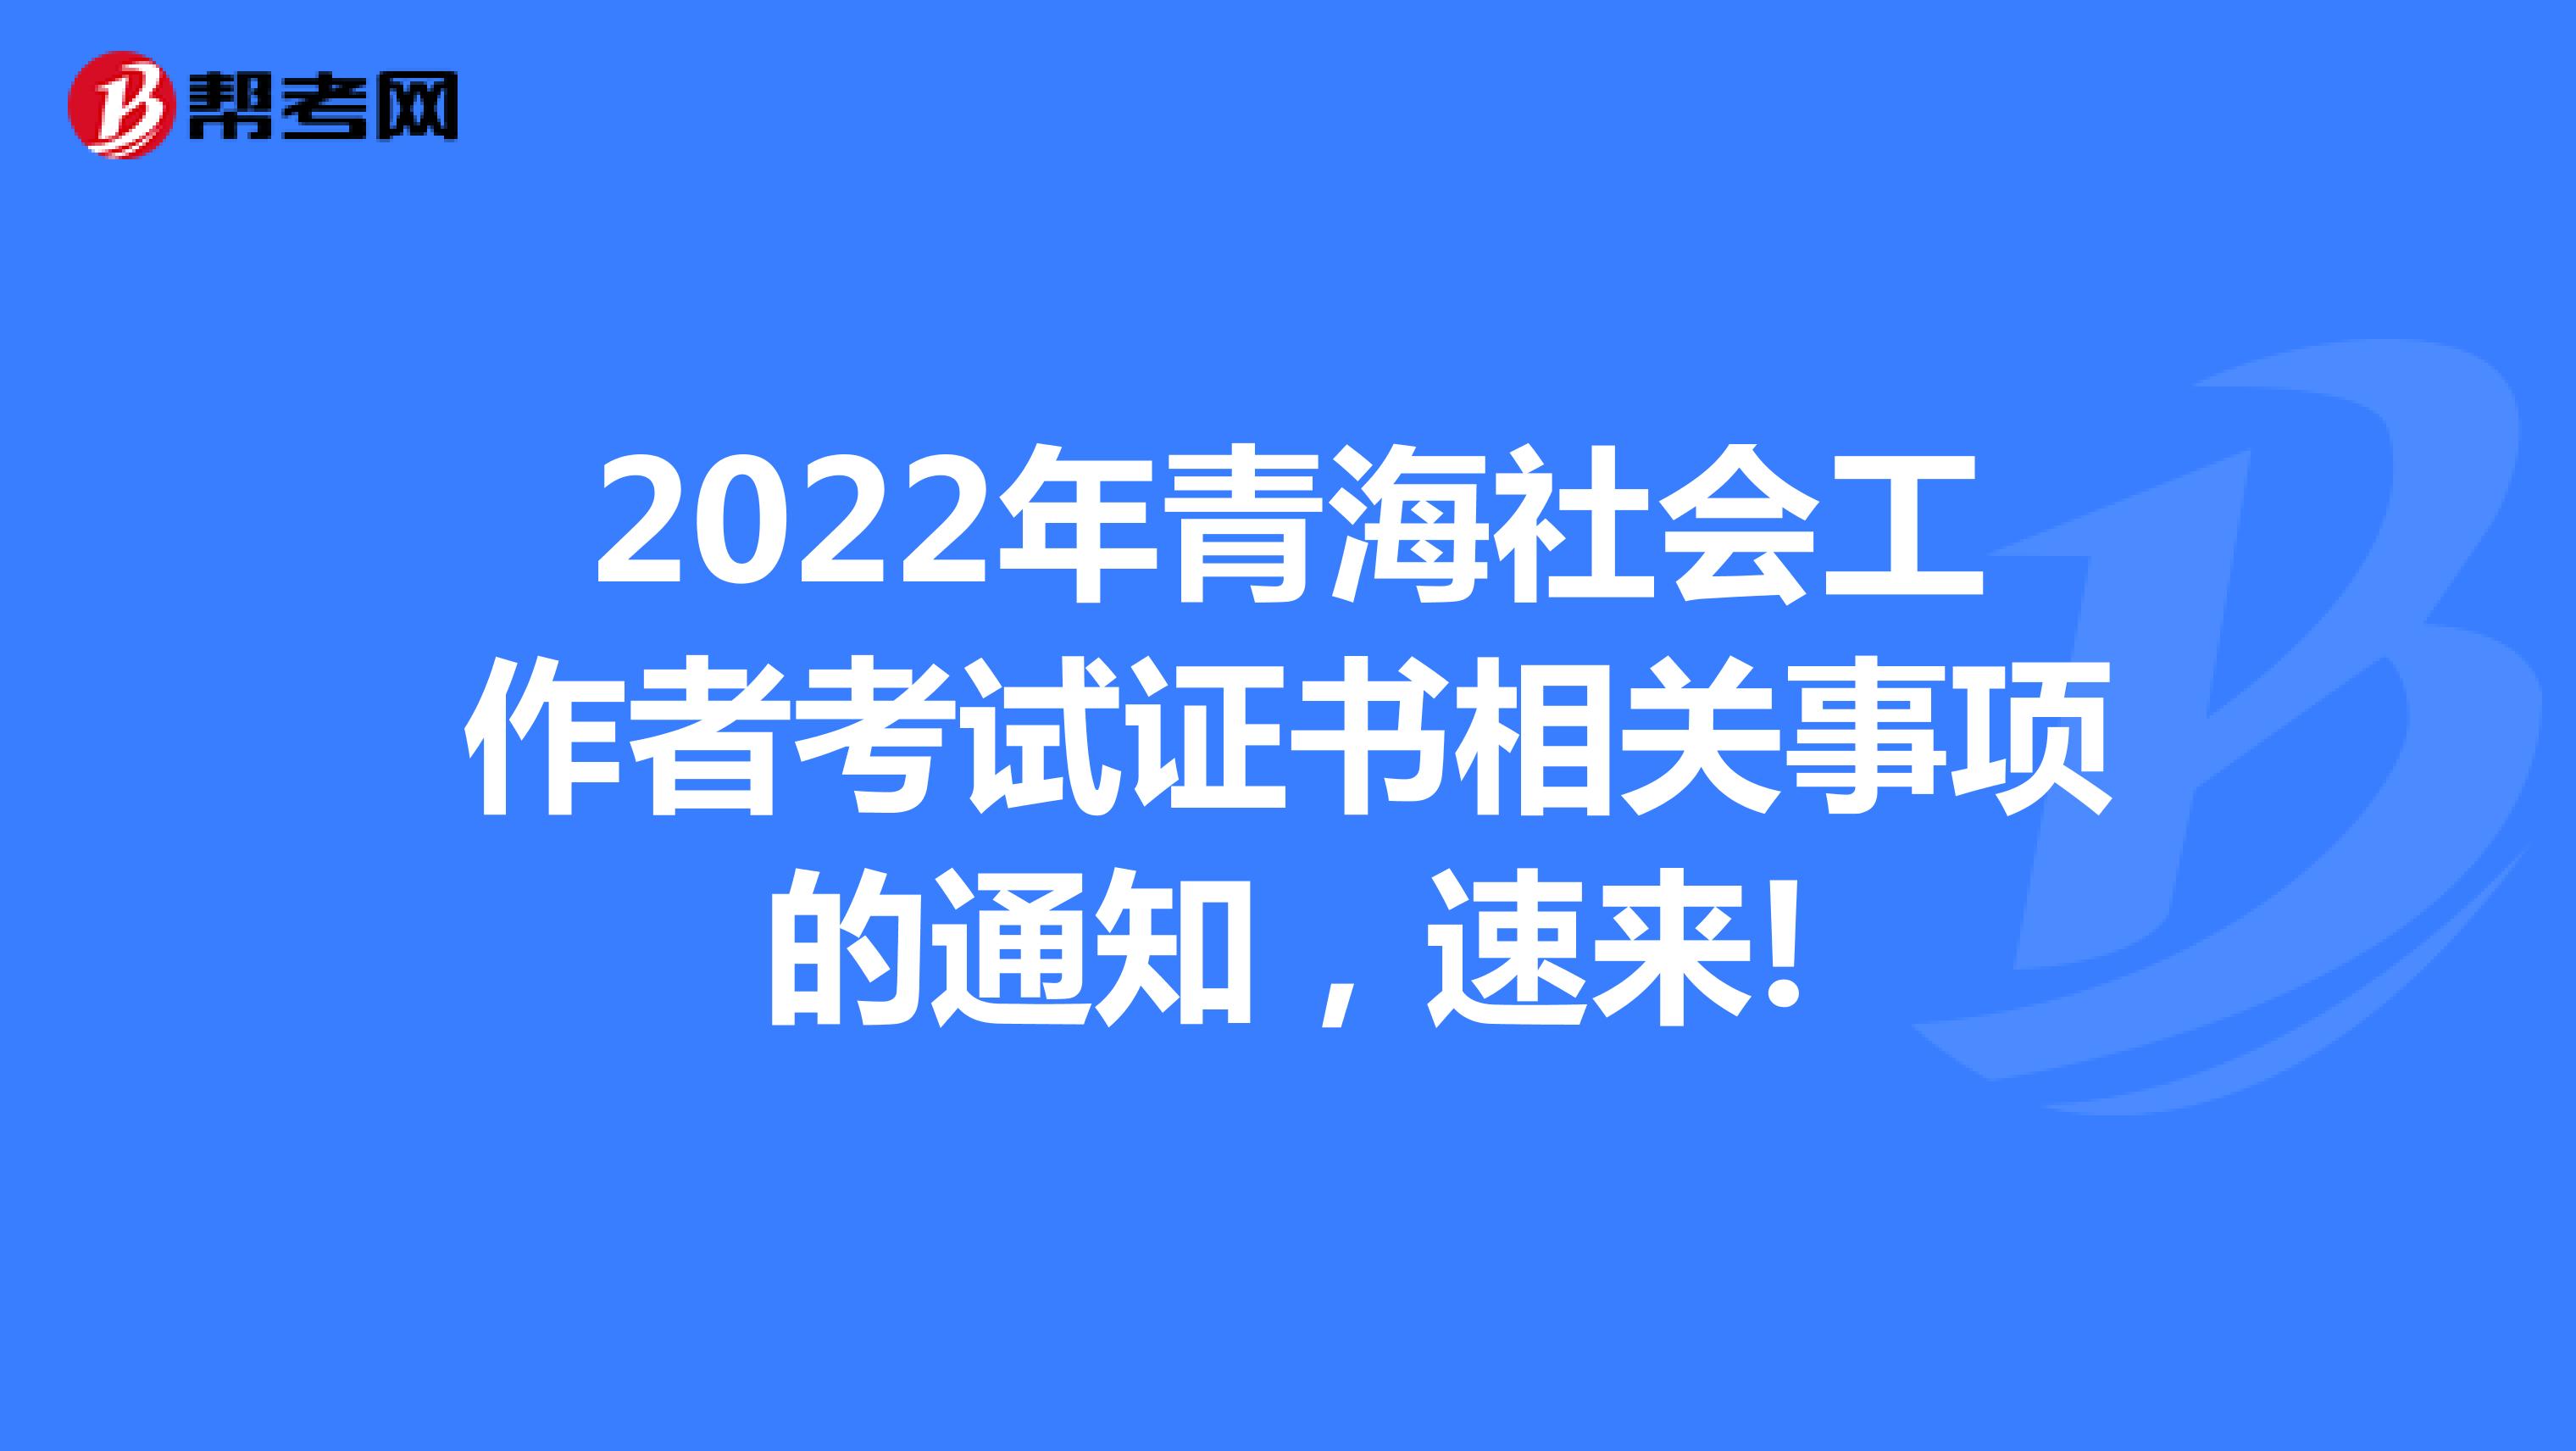 2022年青海社会工作者考试证书相关事项的通知，速来!